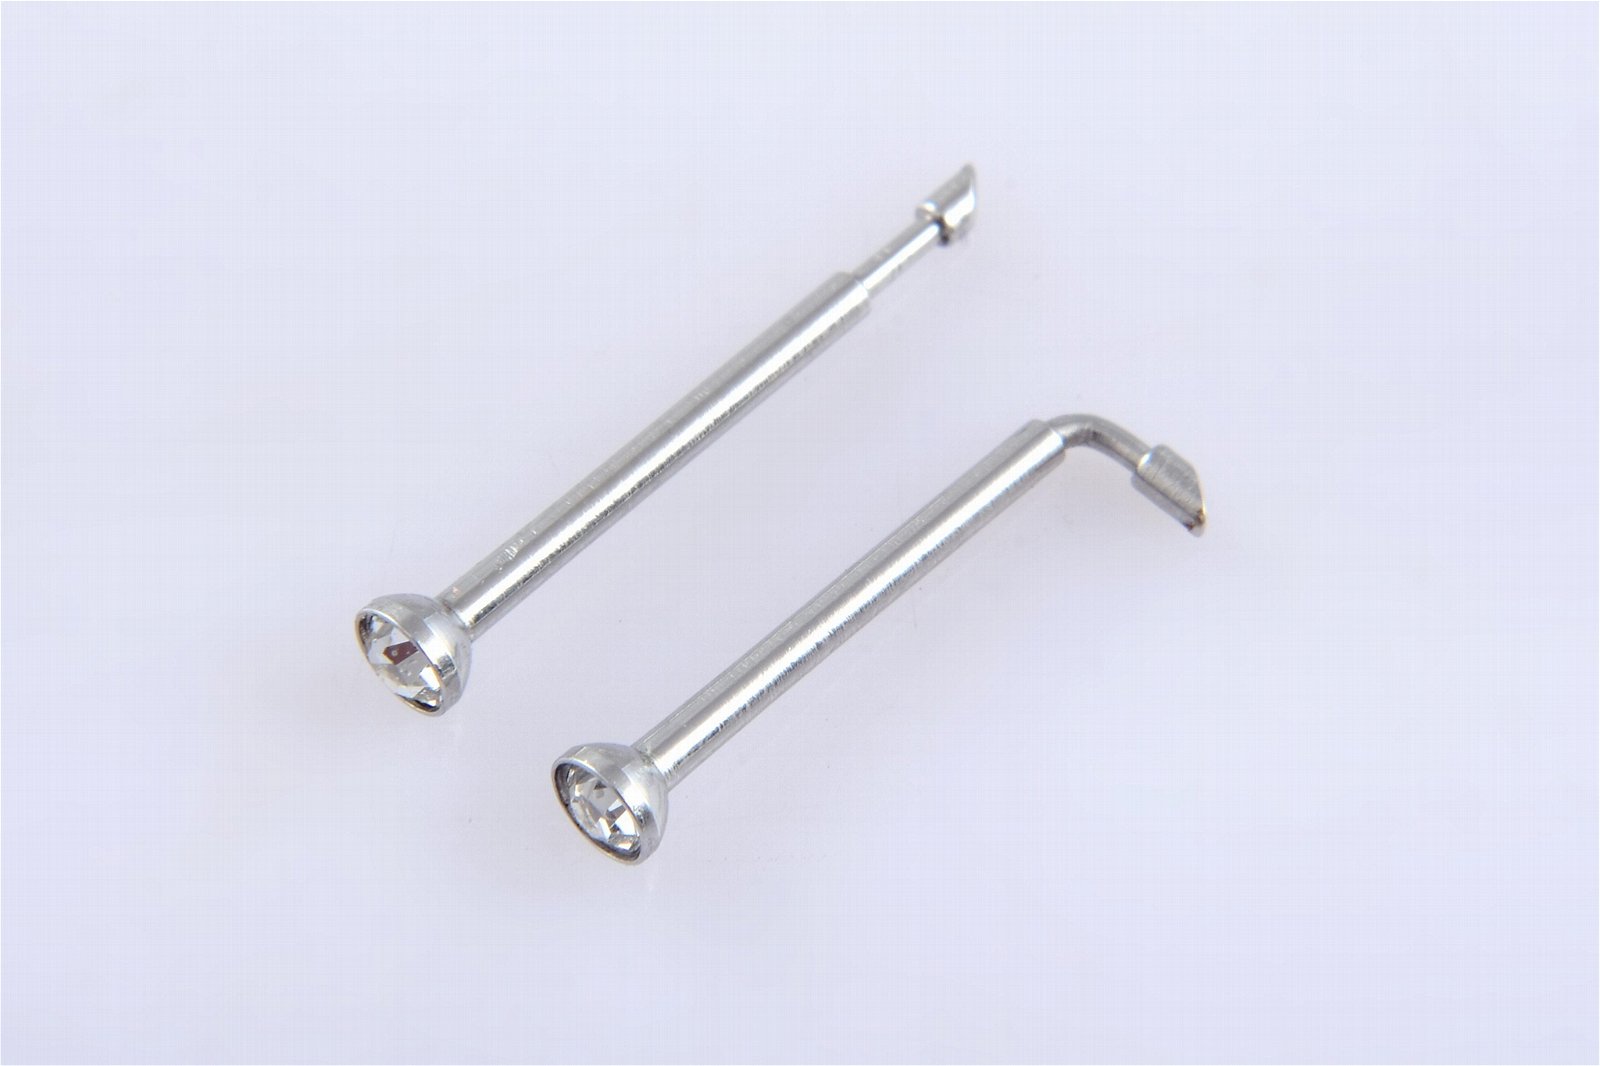 Disposable No Pain Safe Sterile Foldsafe Nose Piercing Gun Kit Piercing Tool 4